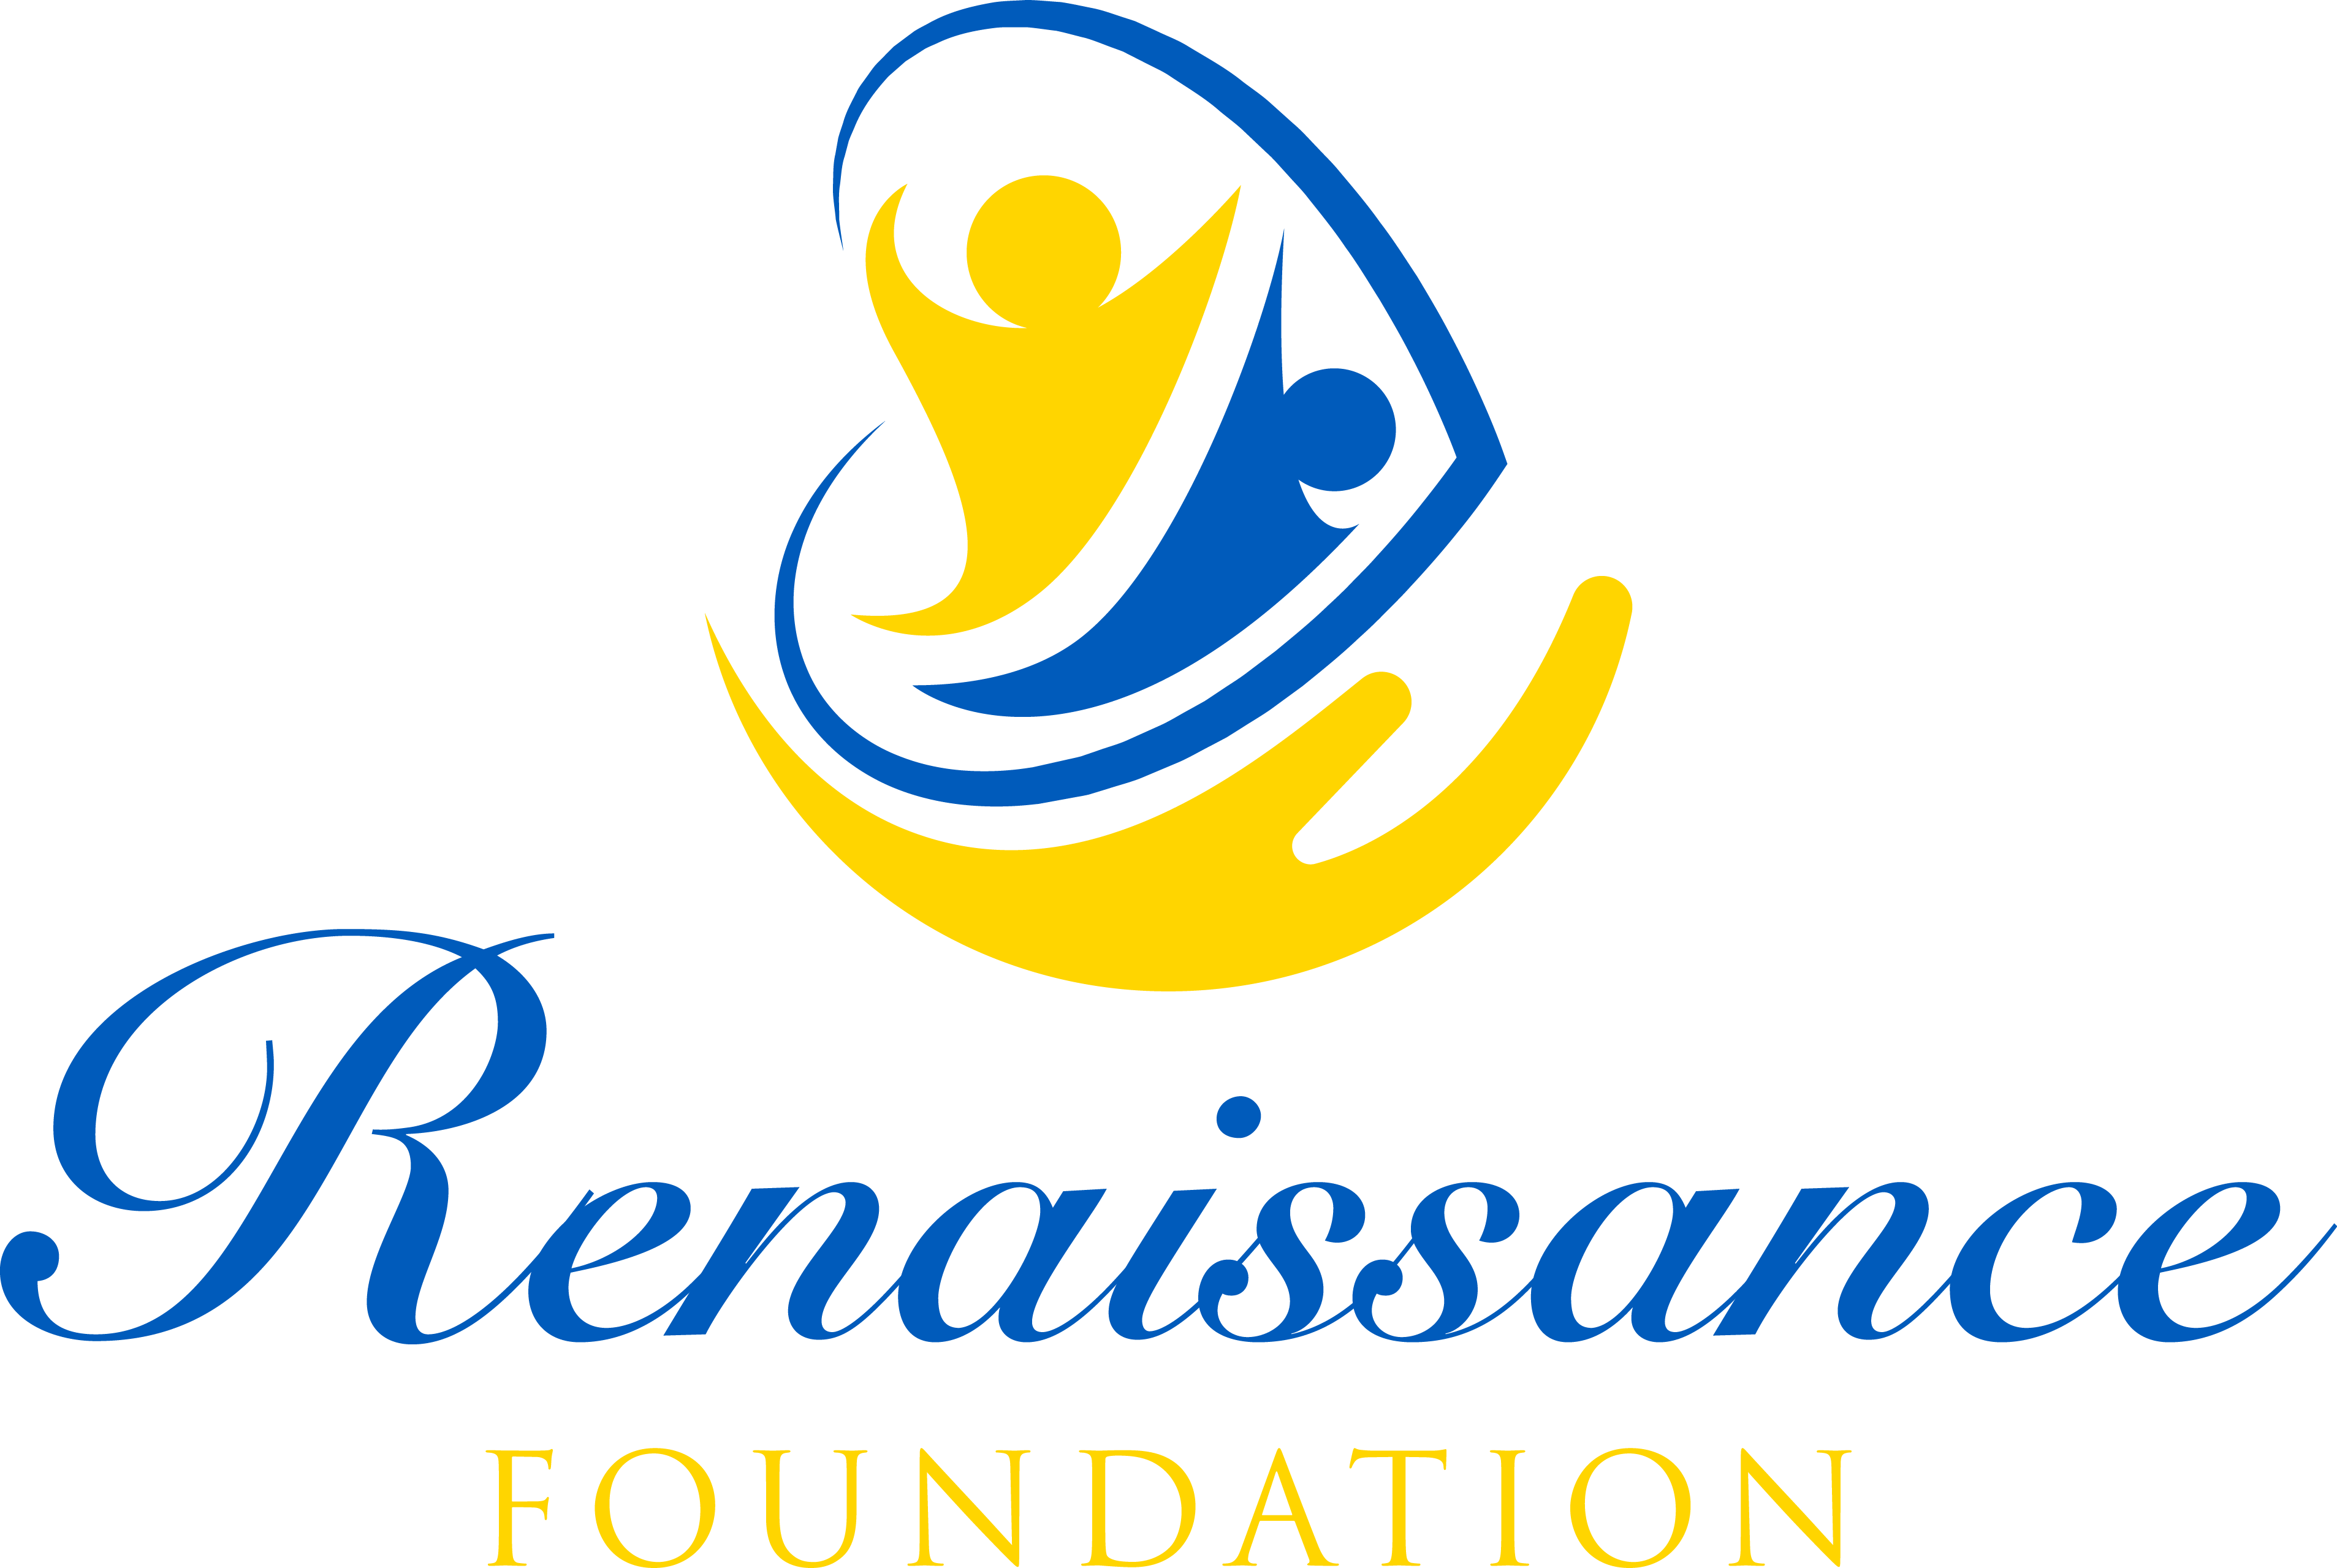 The Renaissance Foundation, LTD